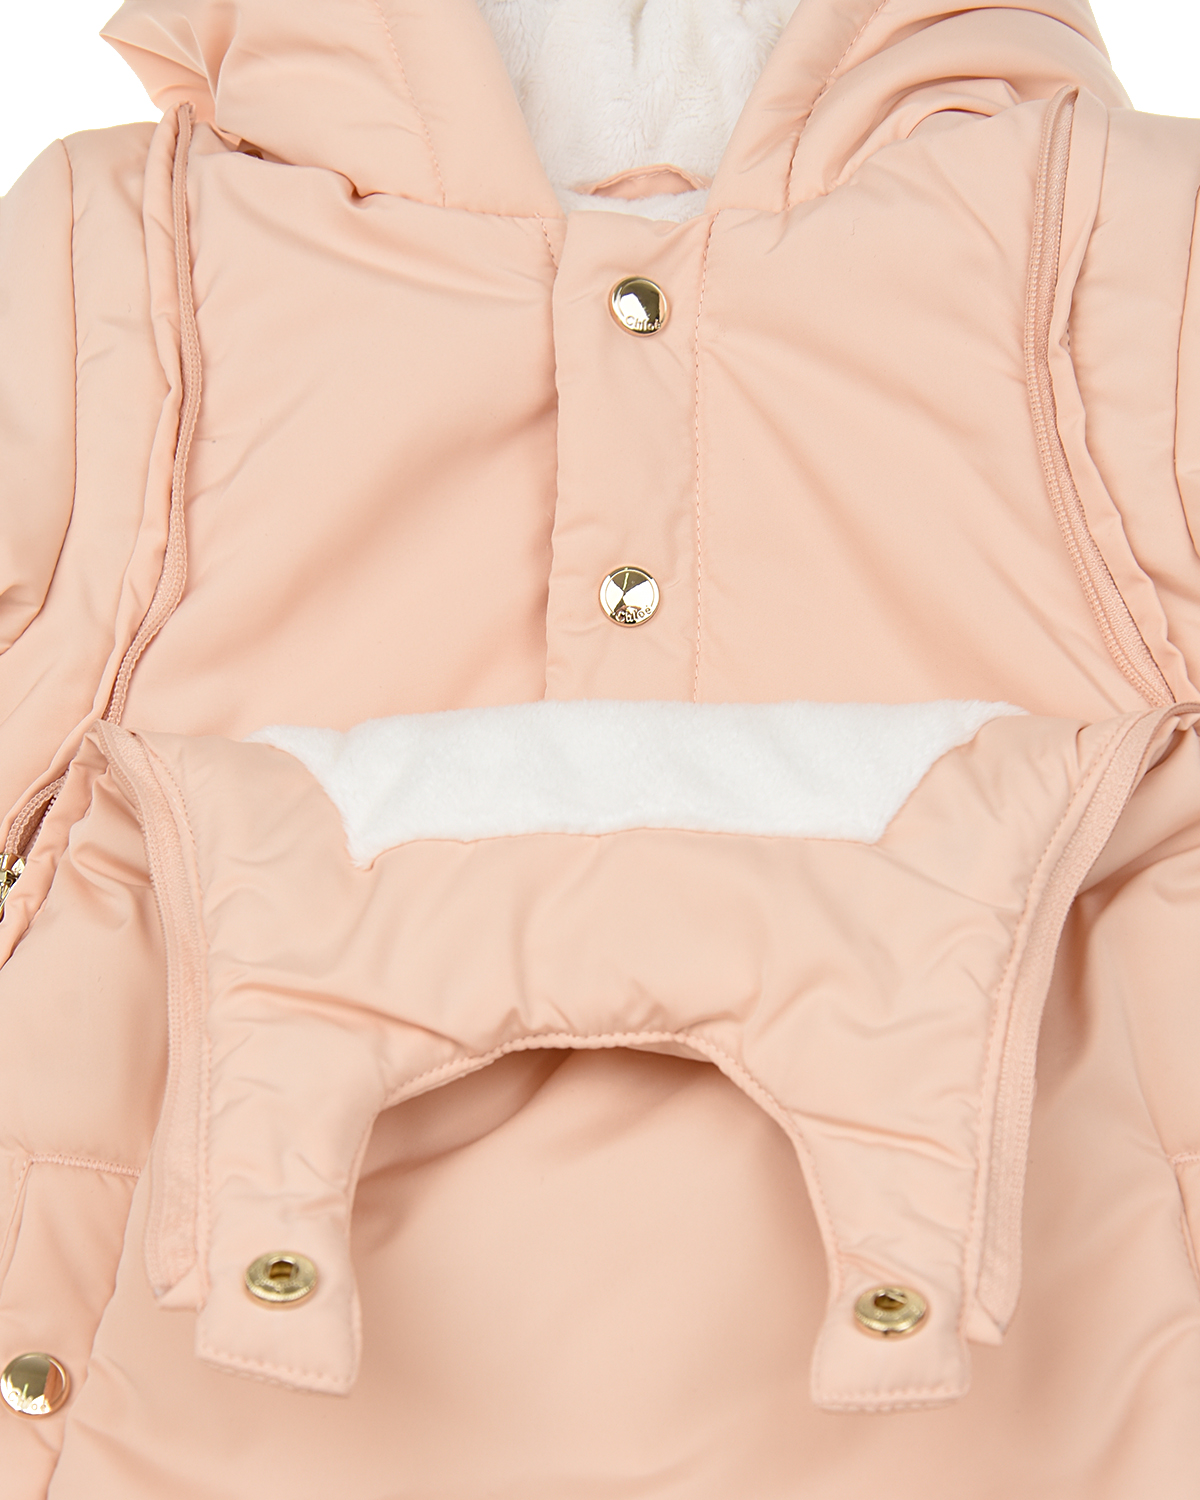 Комплект: комбинезон, варежки и пинетки Chloe детский, размер 62, цвет розовый - фото 5